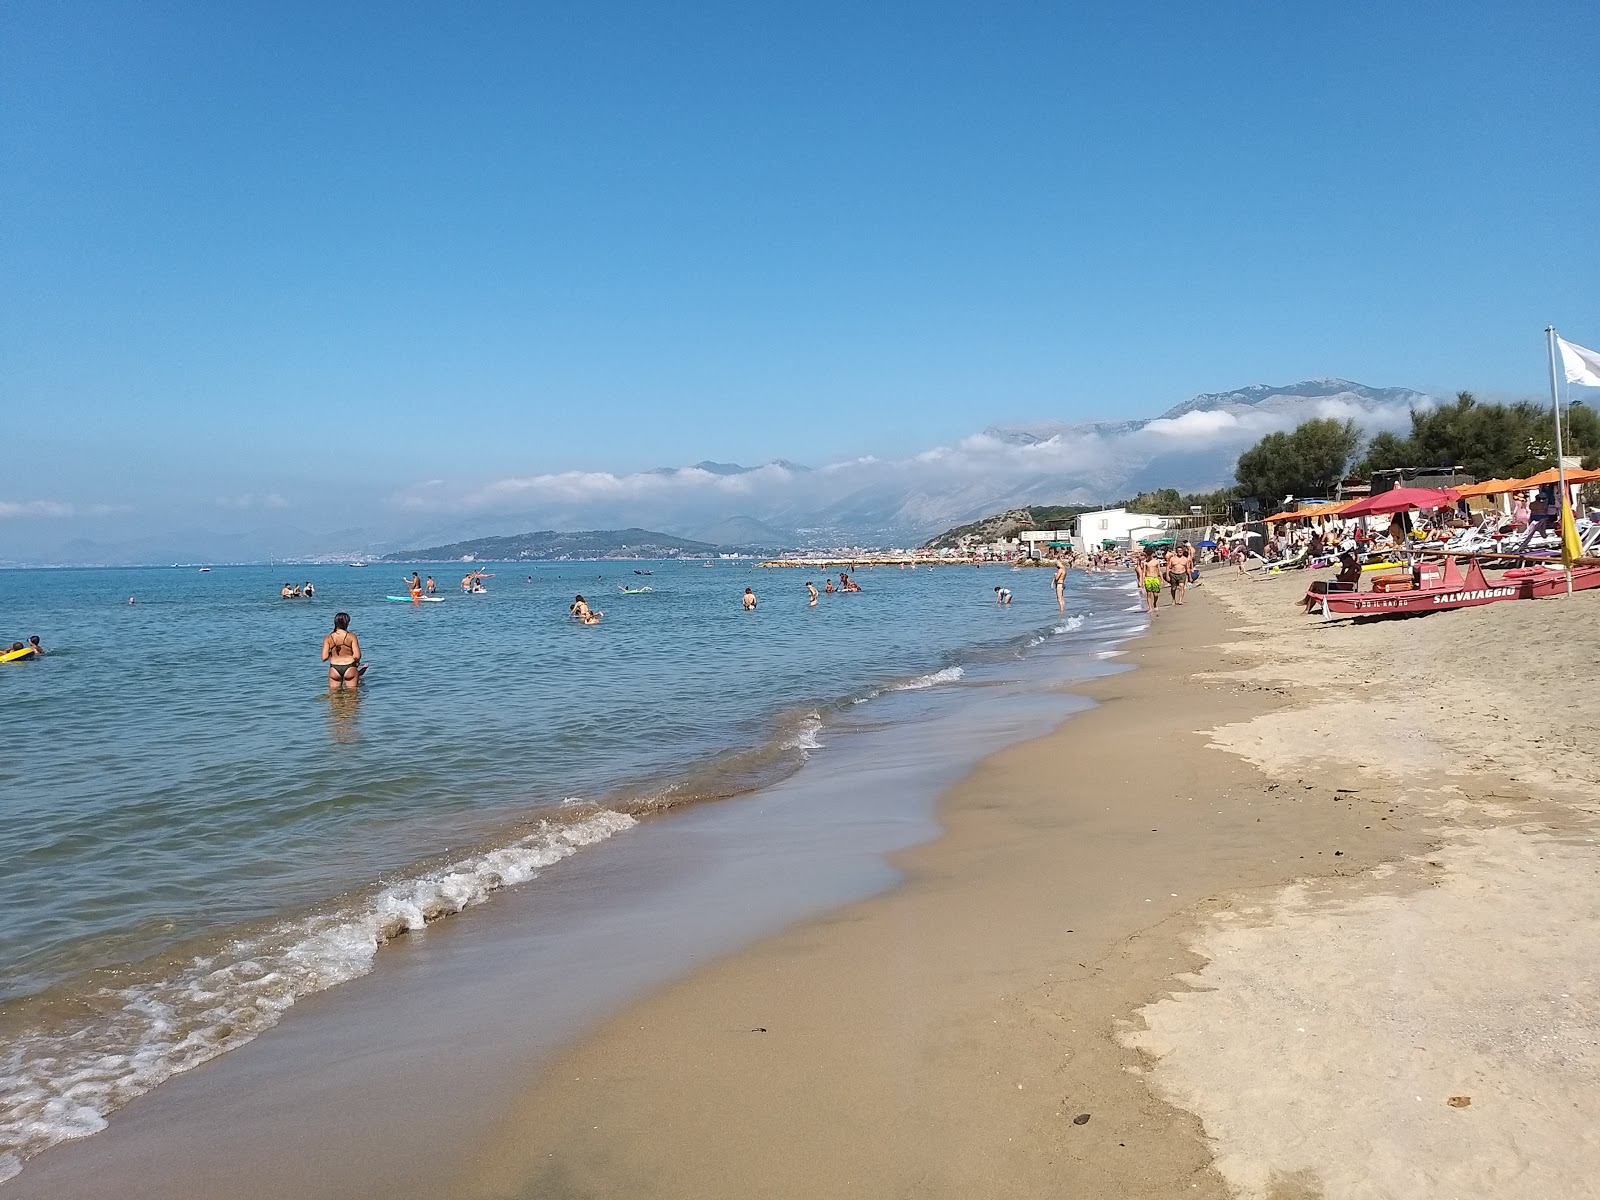 Fotografie cu Marina di Minturno beach cu o suprafață de nisip maro